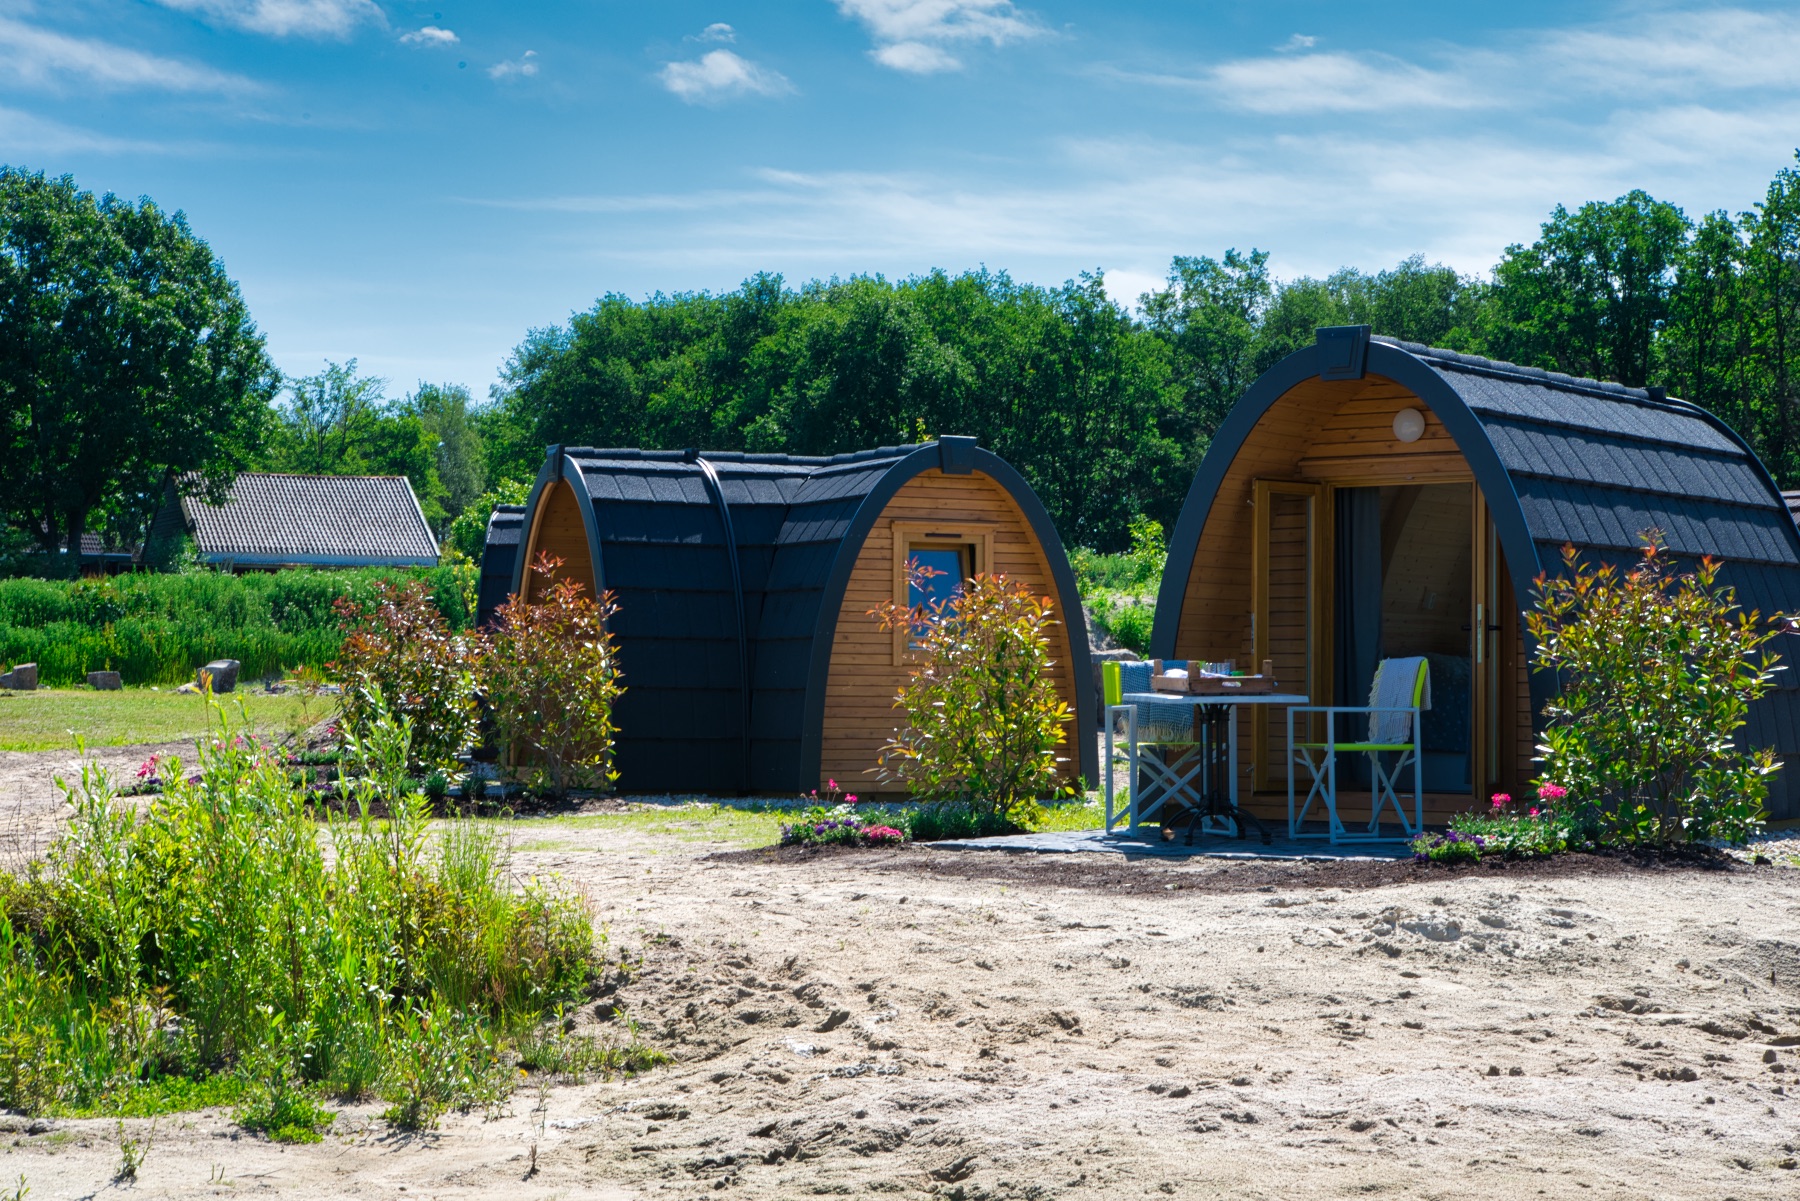 Recreatiepark Camping Pods trekkershut glamping Ticra outdoor